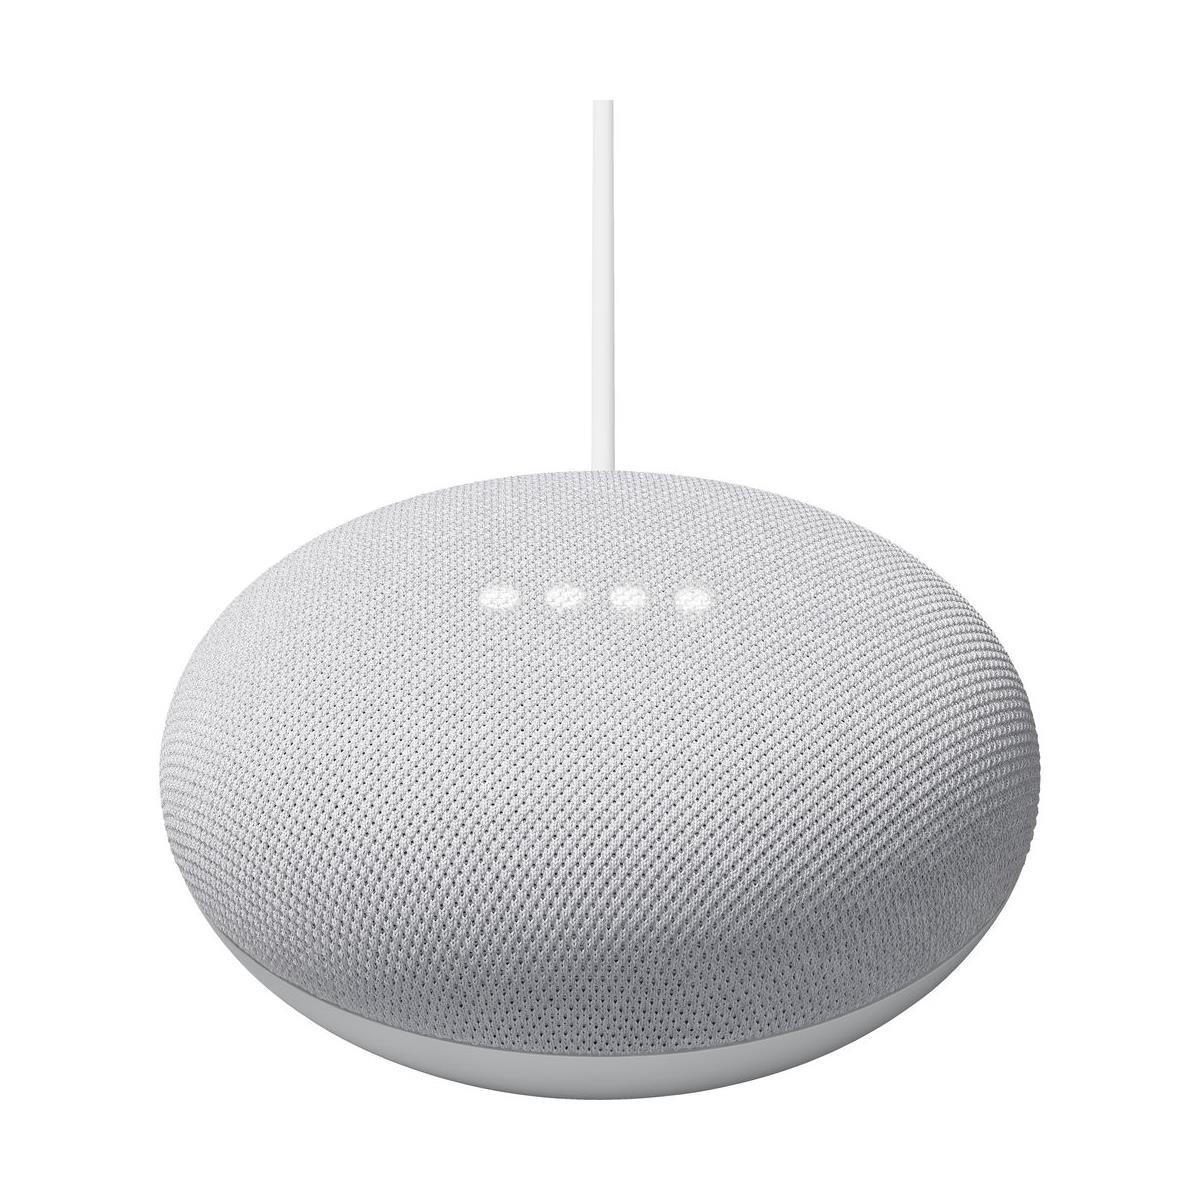 Google Nest Mini 2nd Gen for $18.99 Shipped